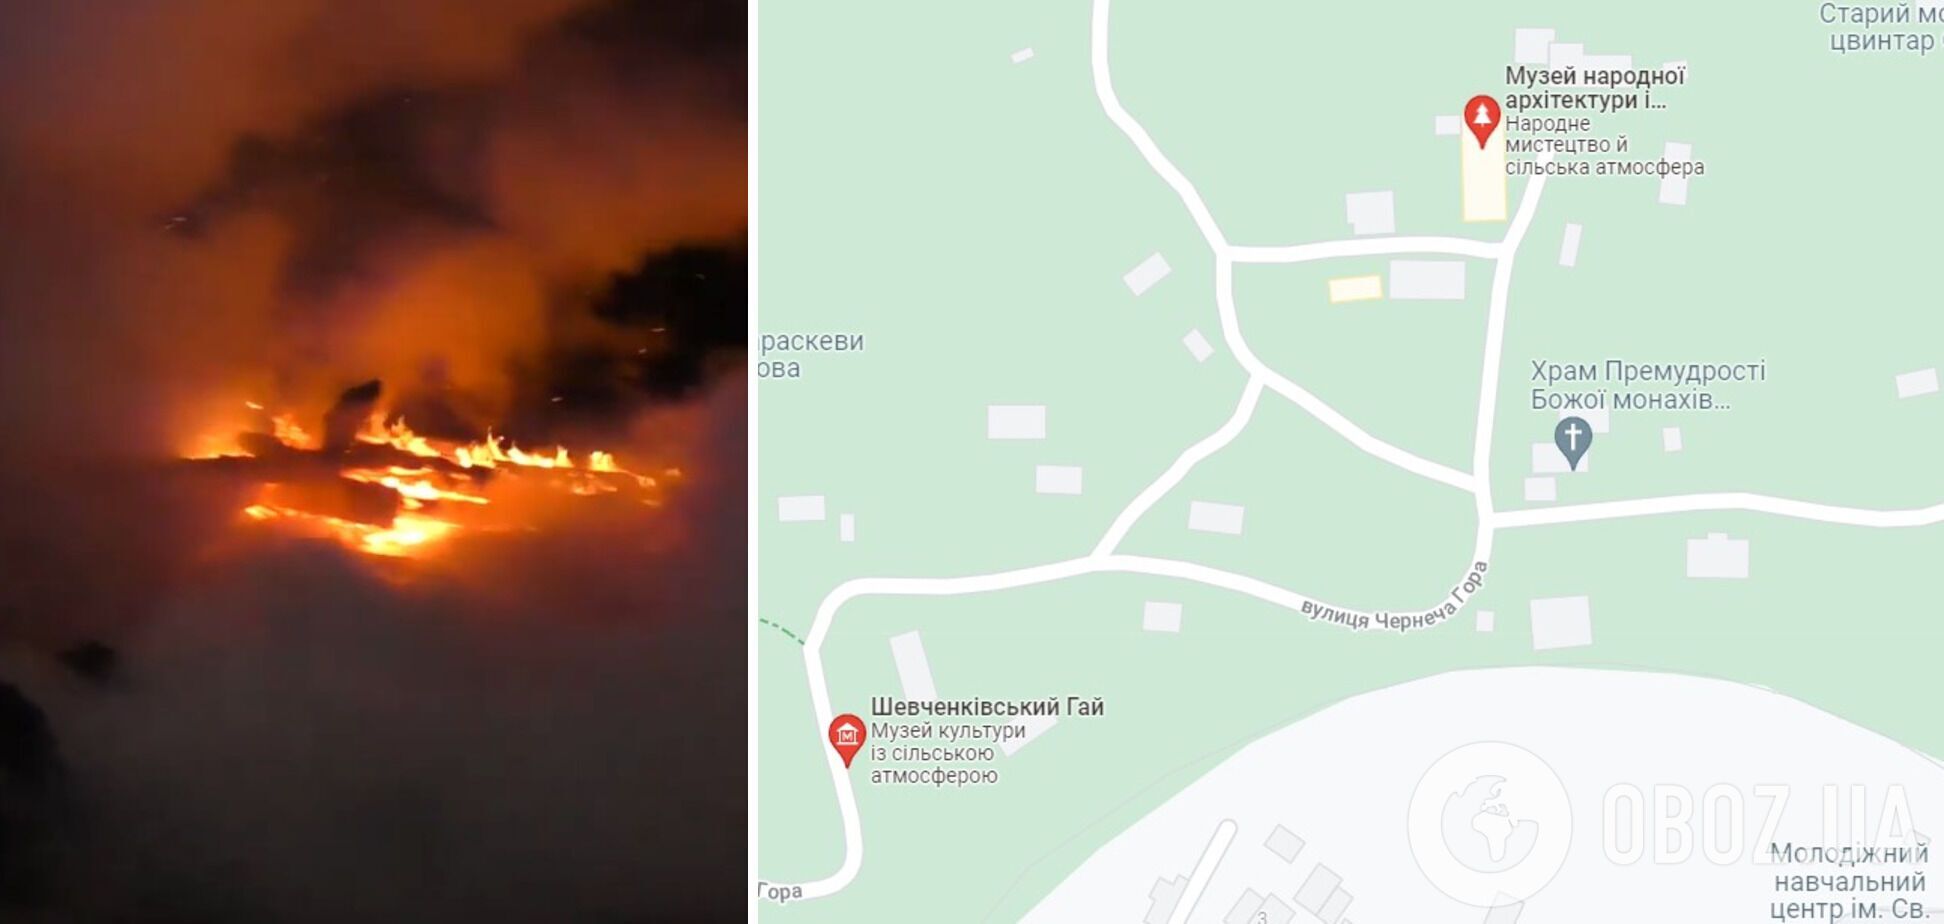 Пожар произошел в "Шевченковском гаю" на улице Чернеча Гора